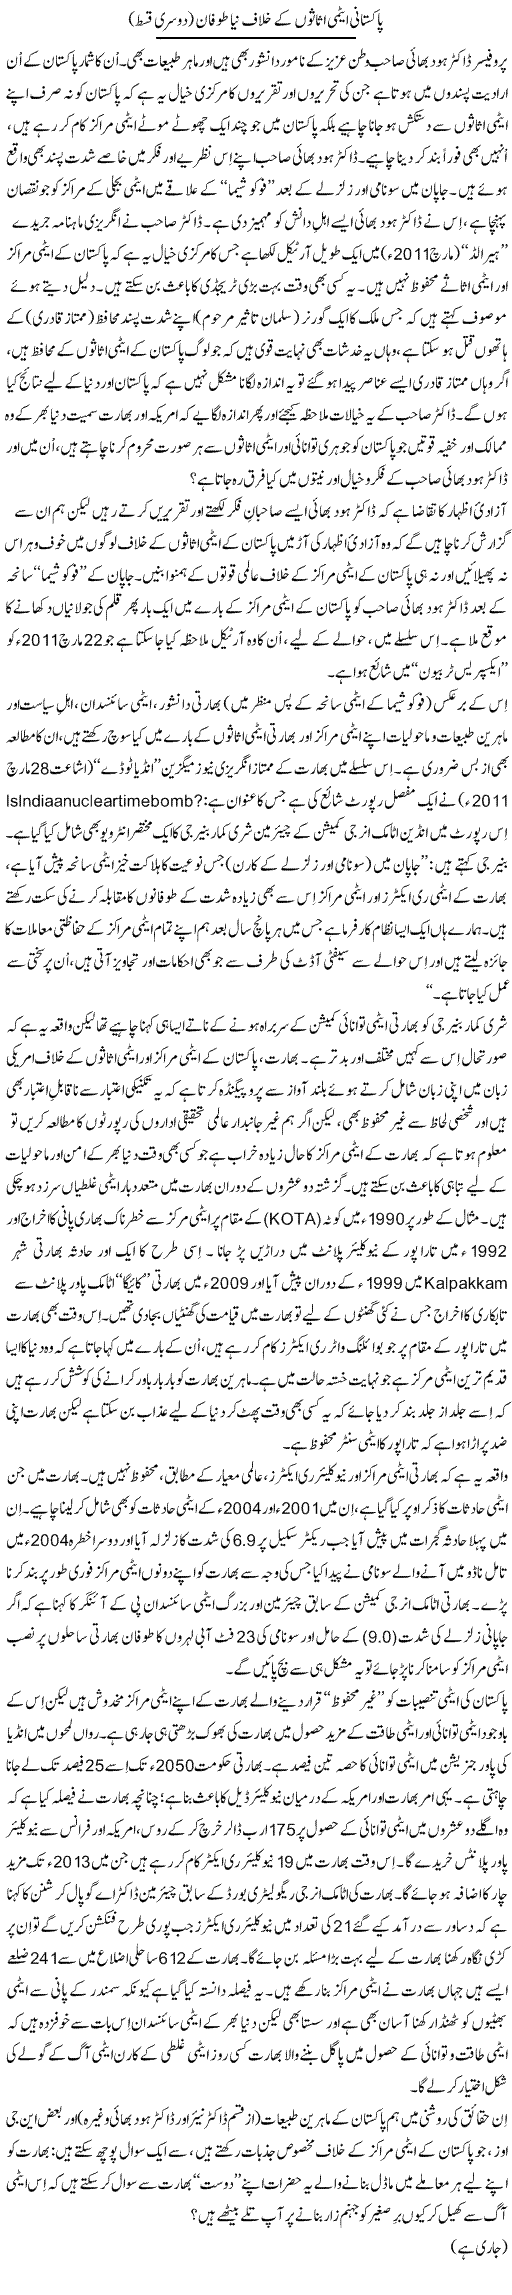 Pakistan's Nuclear Assets Express Column Tanvir Qasir 19 April 2011